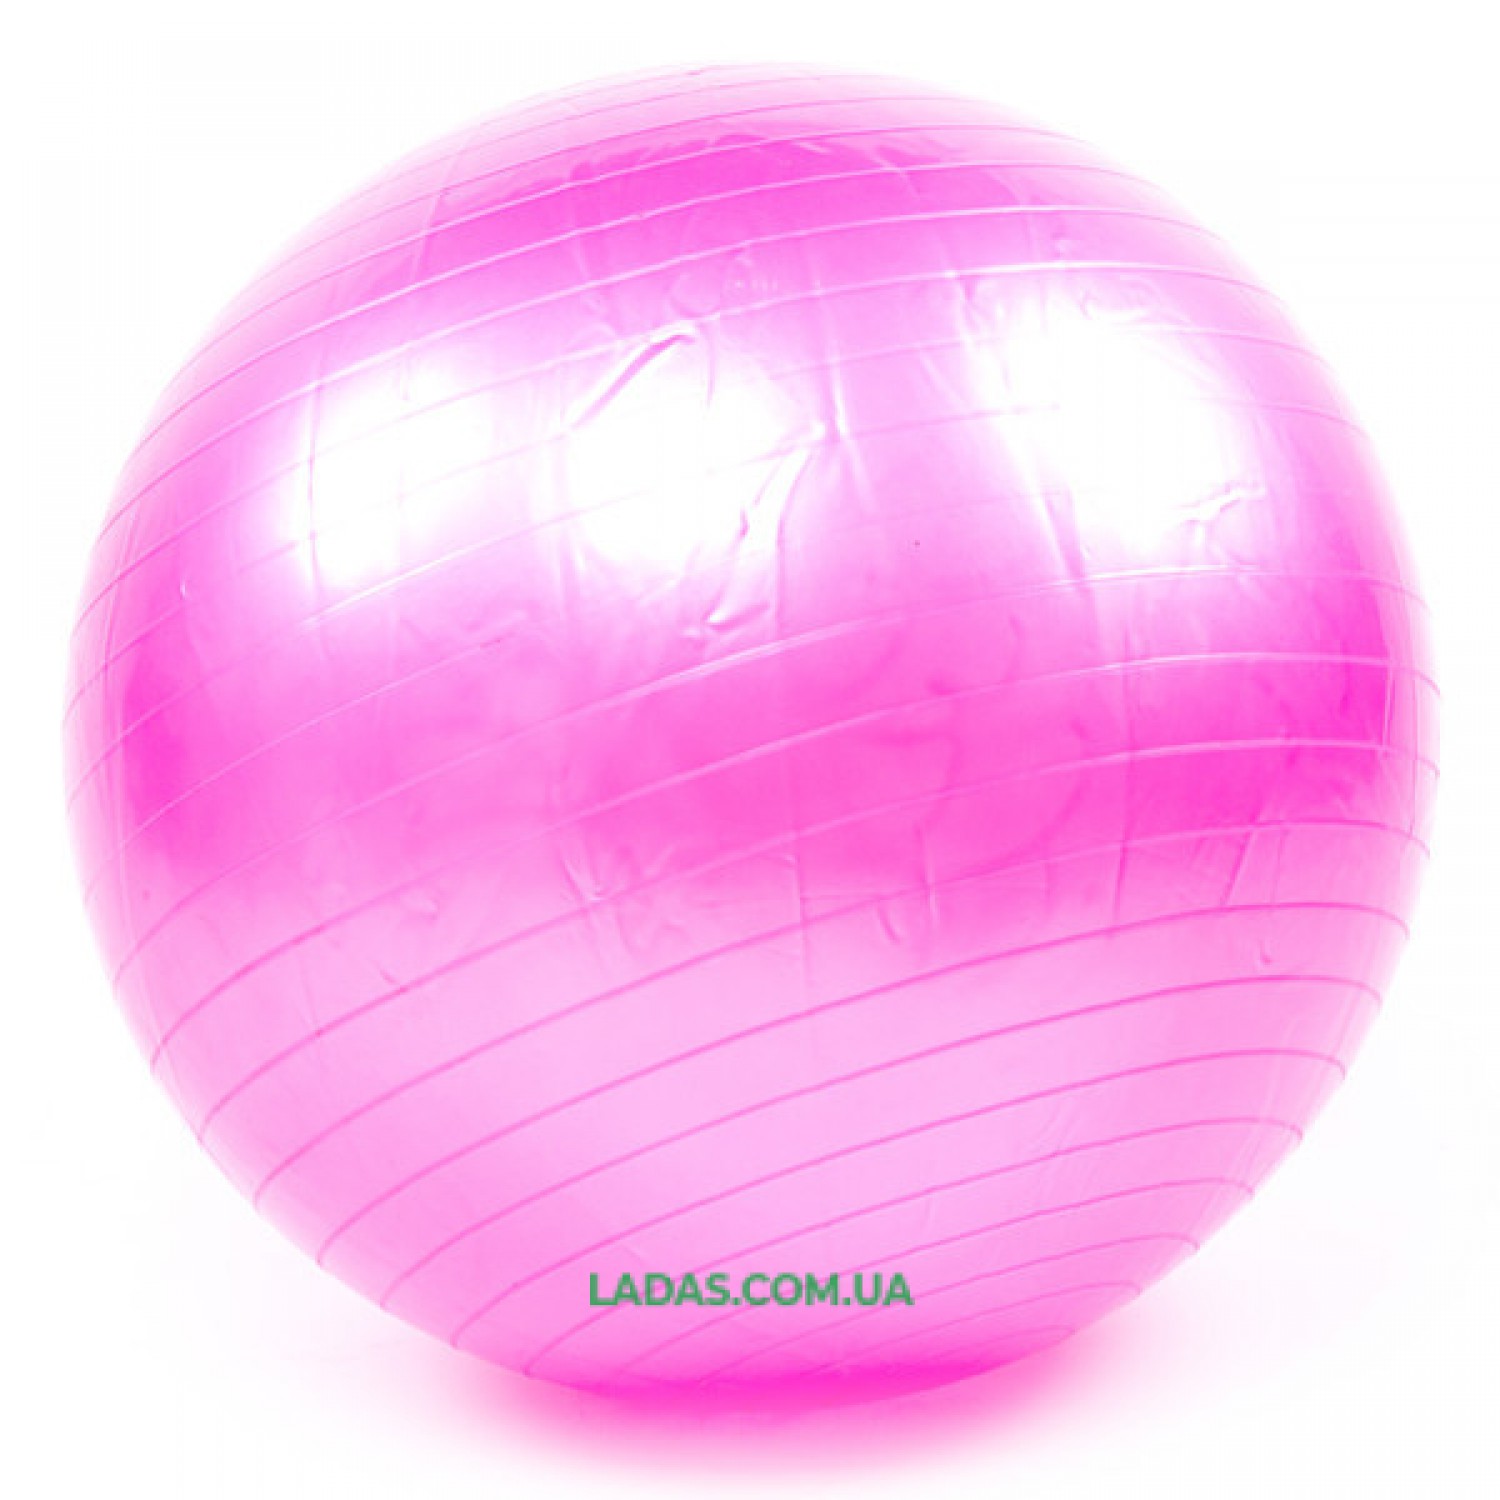 Мяч для фитнеса (фитбол) гладкий 55 см KingLion,розовый